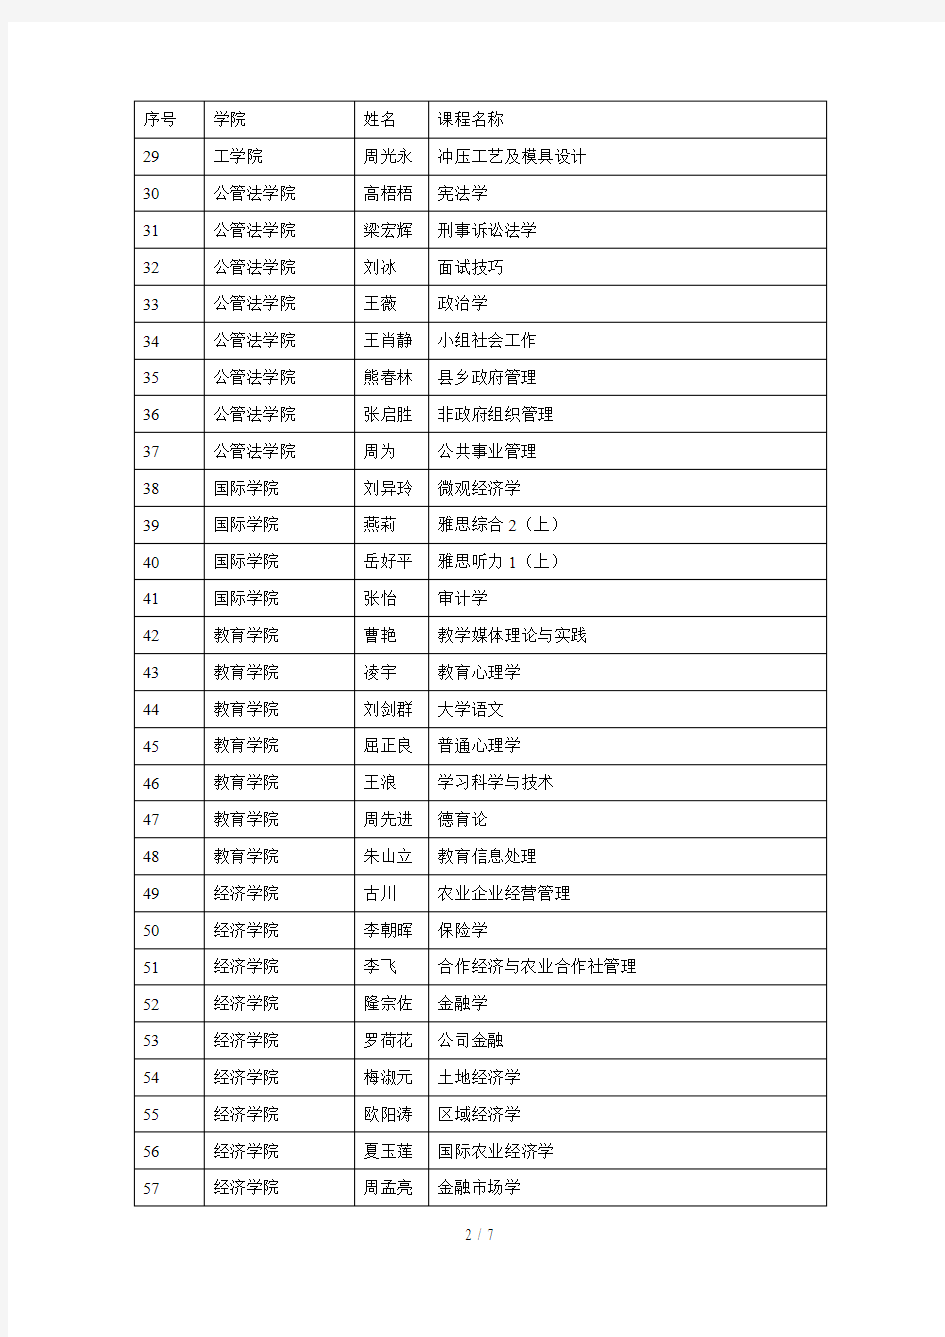 湖南农业大学2017年教师课程教学考核优秀名单